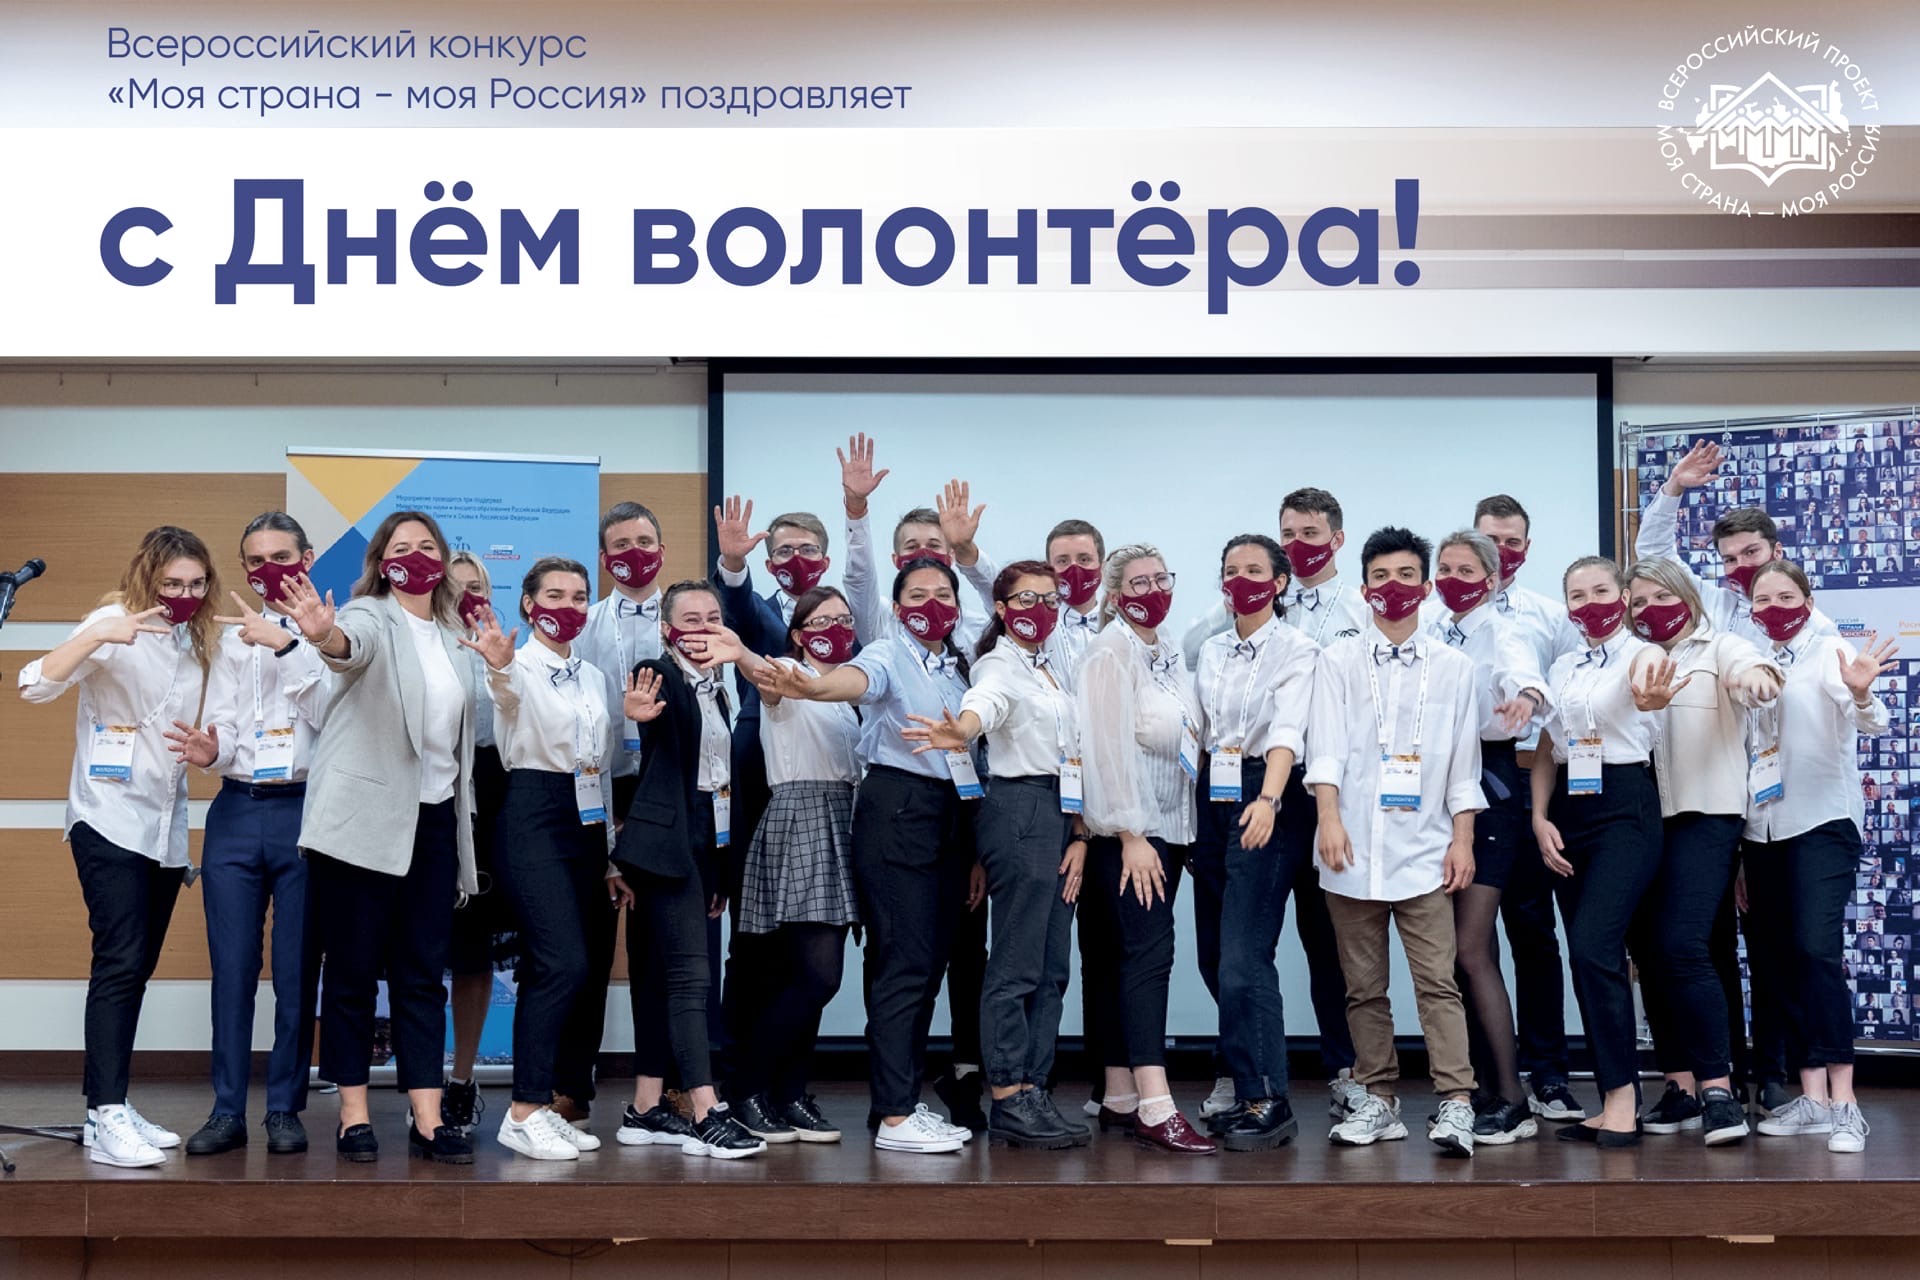 Всероссийский конкурс «Моя страна - моя Россия» поздравляет с Днём волонтёра!